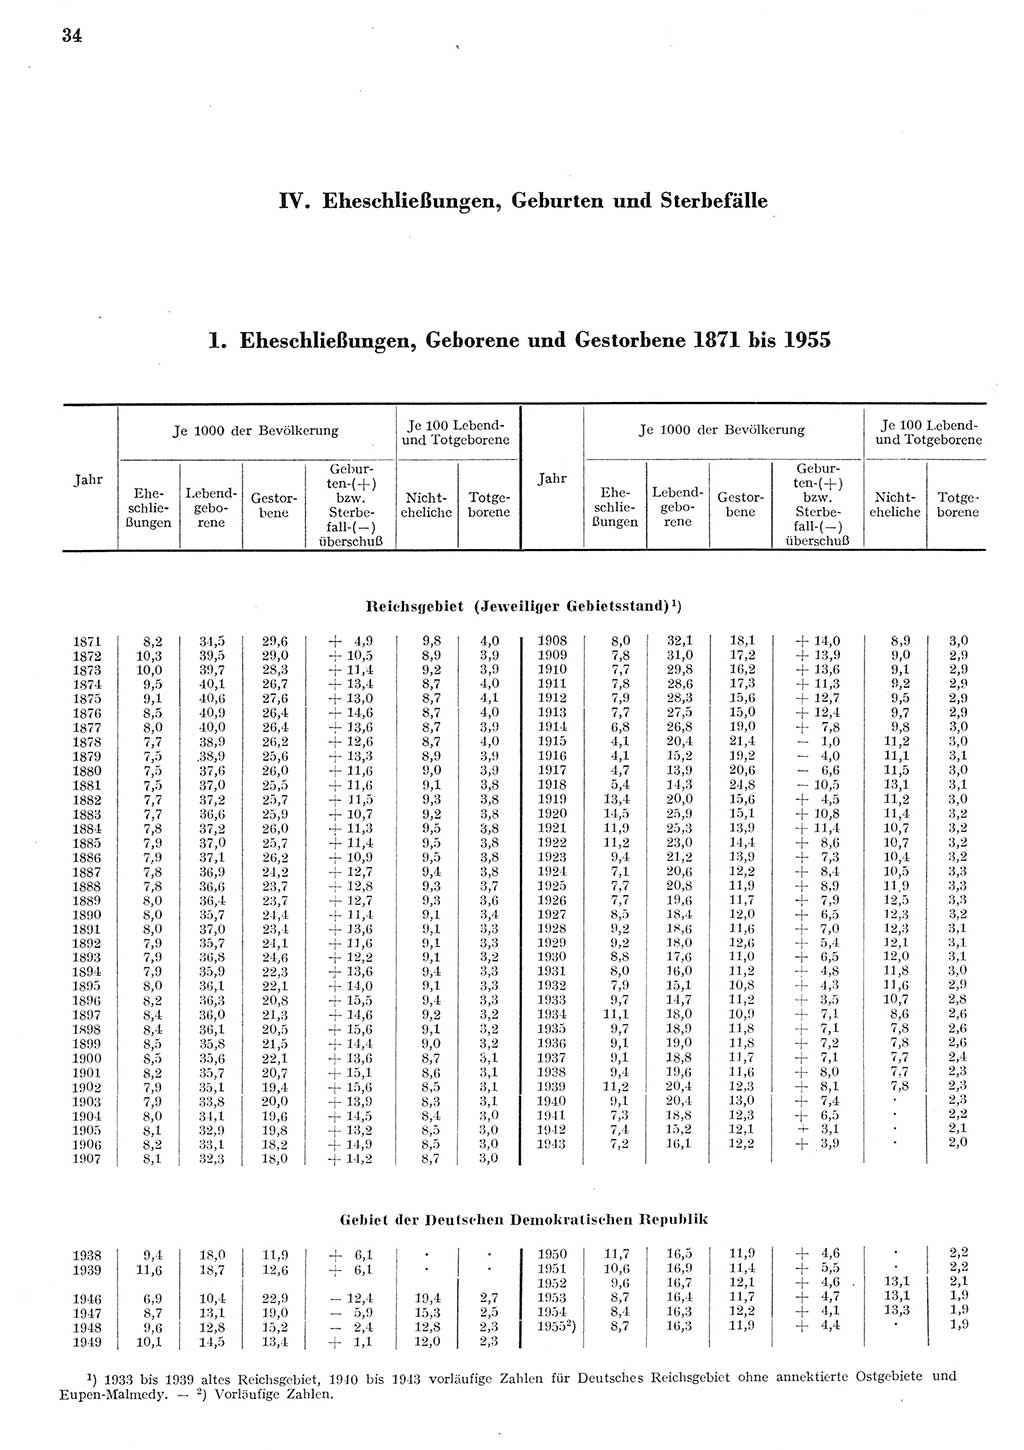 Statistisches Jahrbuch der Deutschen Demokratischen Republik (DDR) 1955, Seite 34 (Stat. Jb. DDR 1955, S. 34)